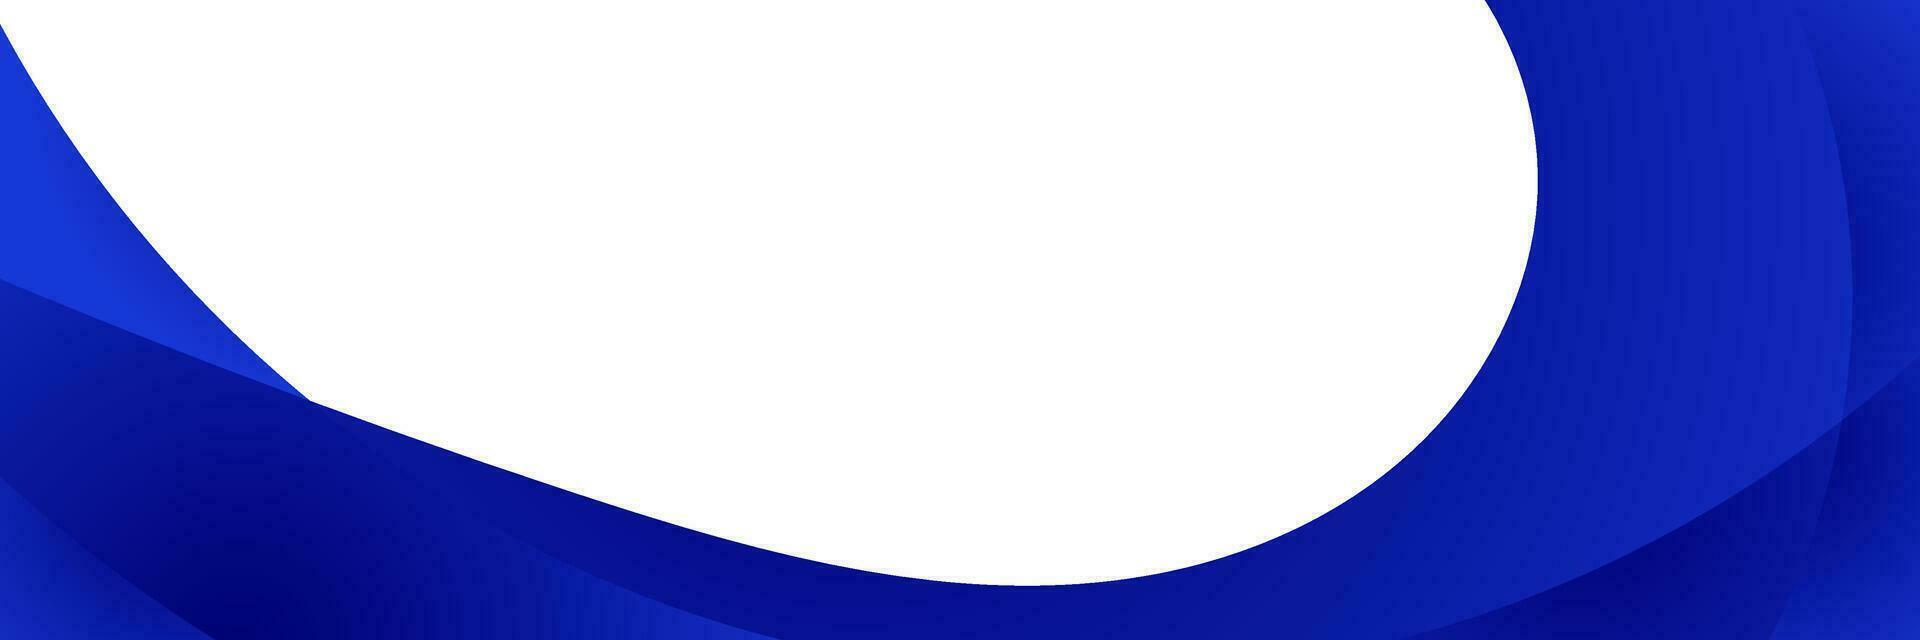 blauw helling Golf achtergrond vector